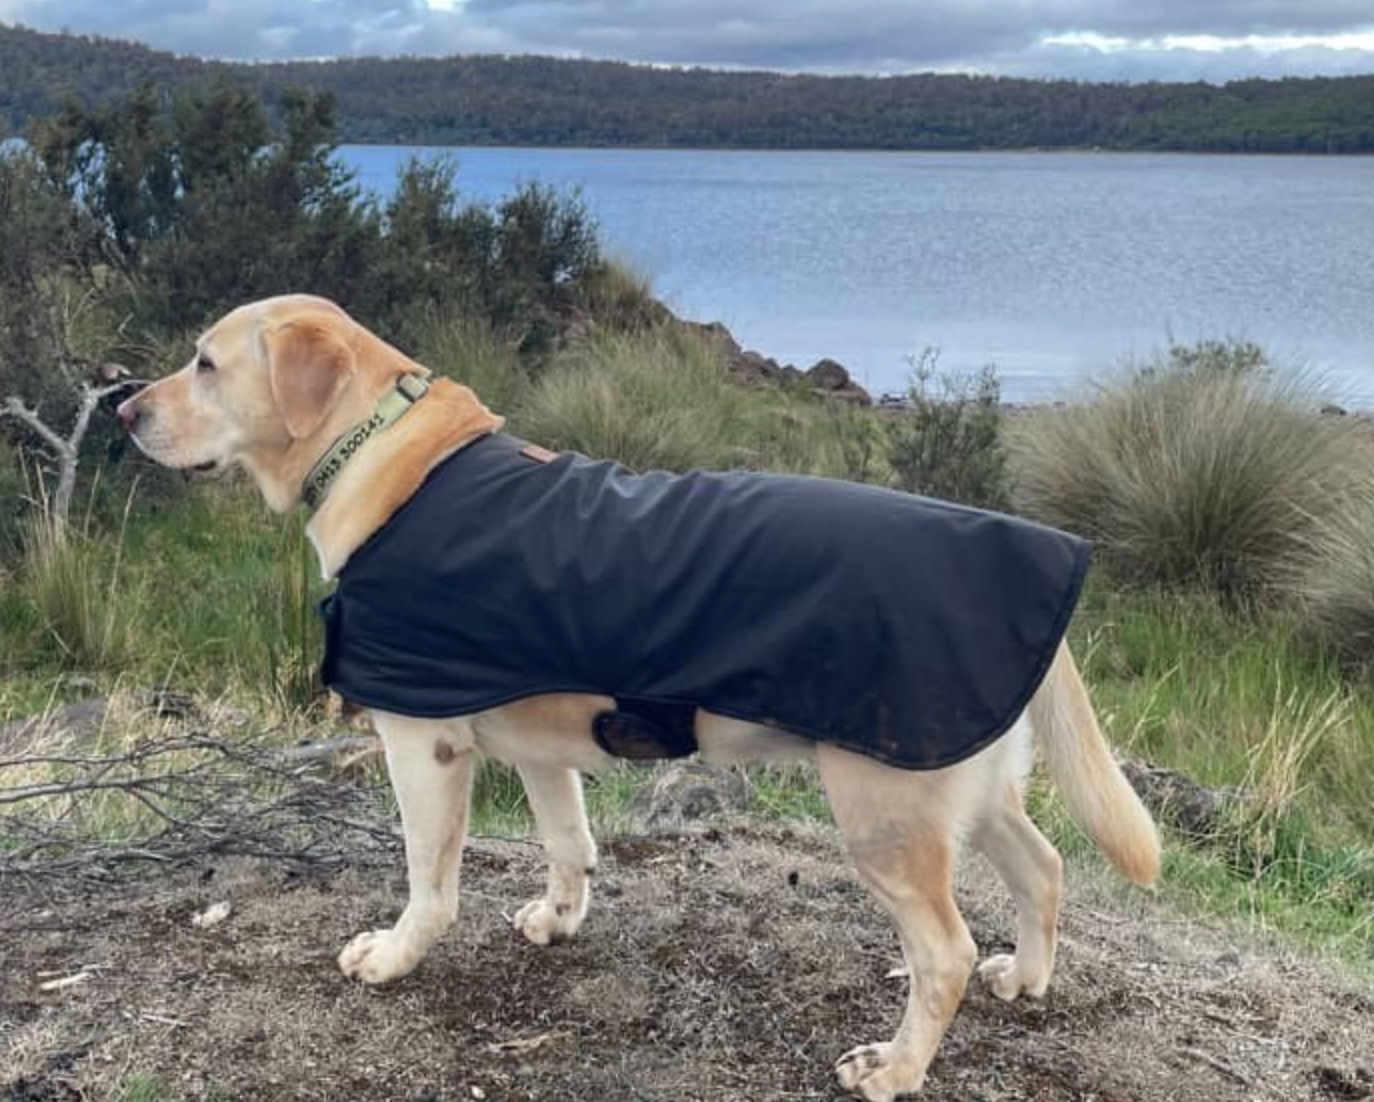 Woollen Dog Coats - The Golden Apple NZ